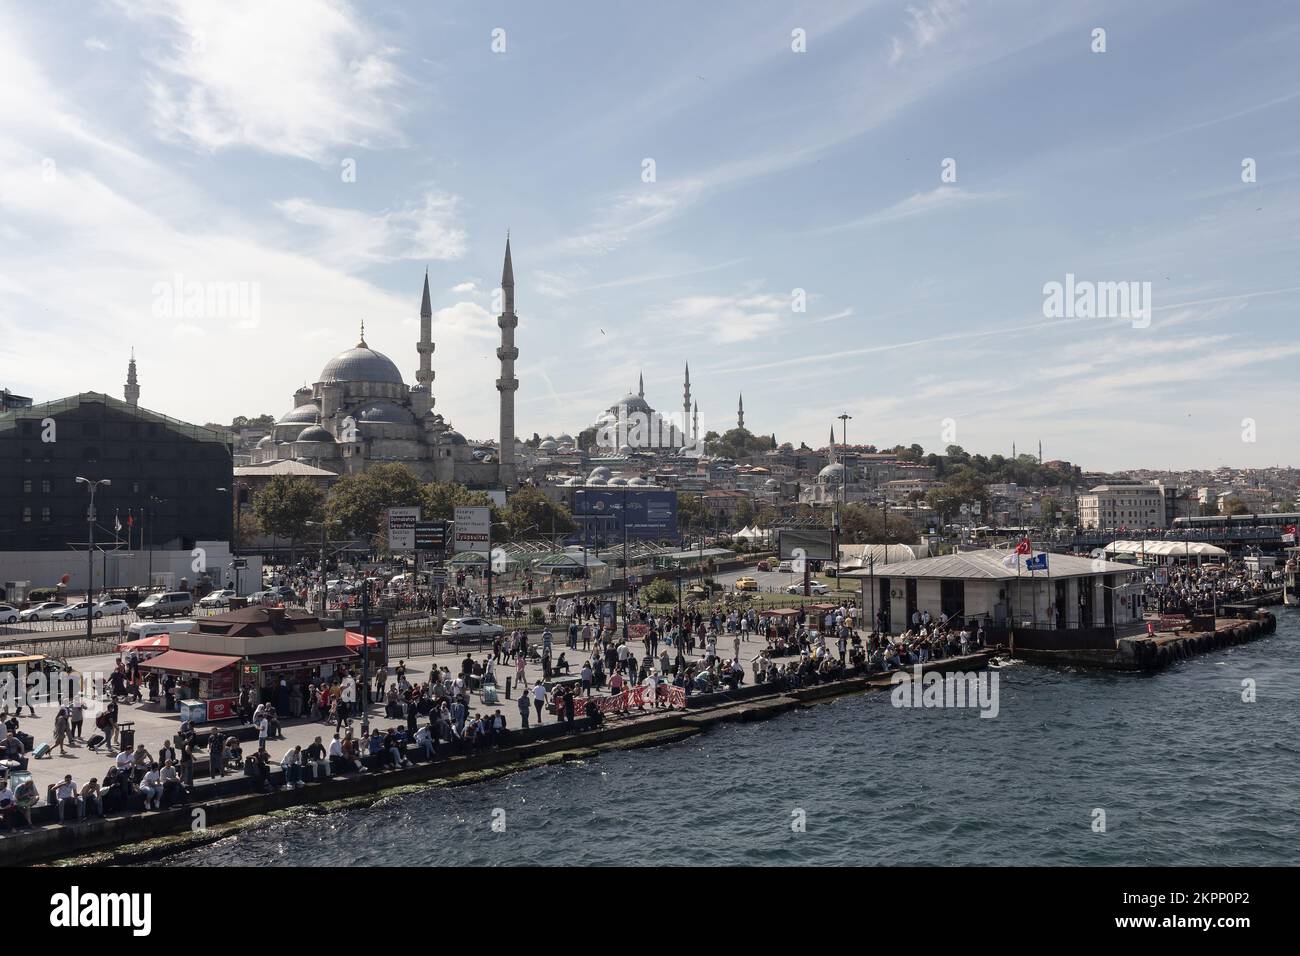 Blick auf viele Menschen in der Gegend von Eminonu in Istanbul. Historische Moscheen namens Yeni und Yavuz Sultan Selim sind zu sehen. Es ist ein sonniger Sommertag. Stockfoto